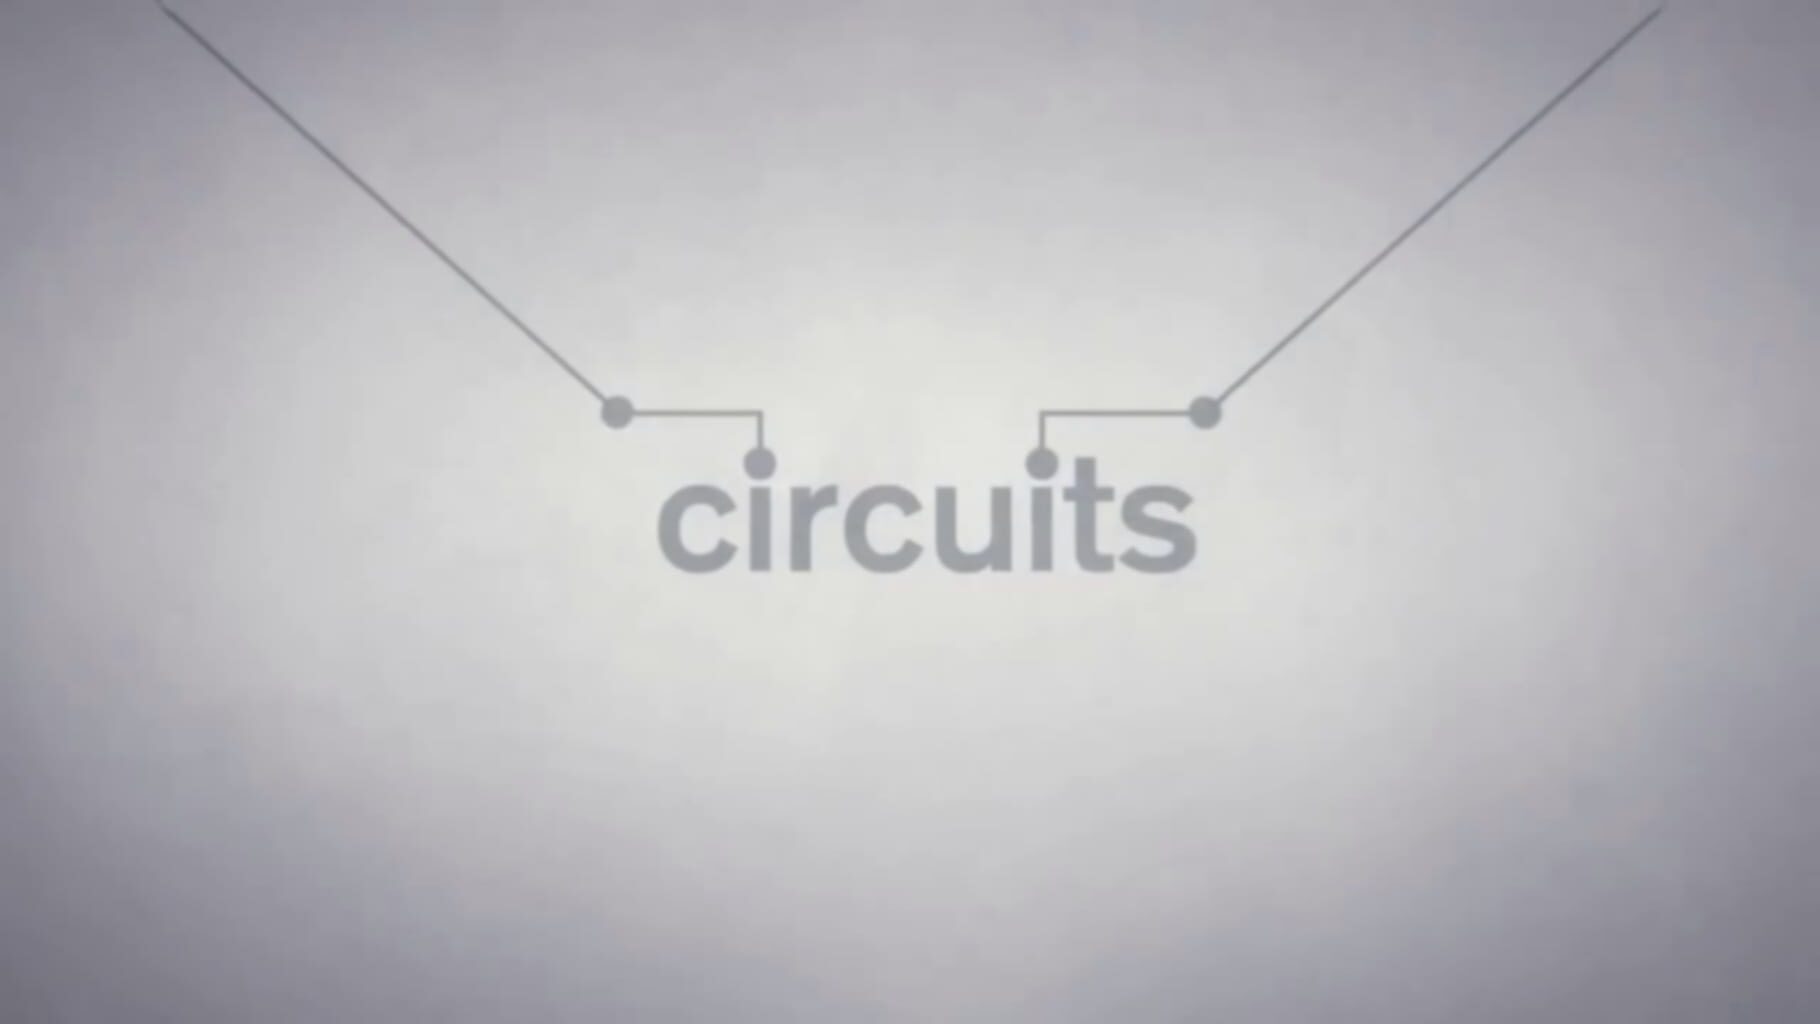 Circuits artwork